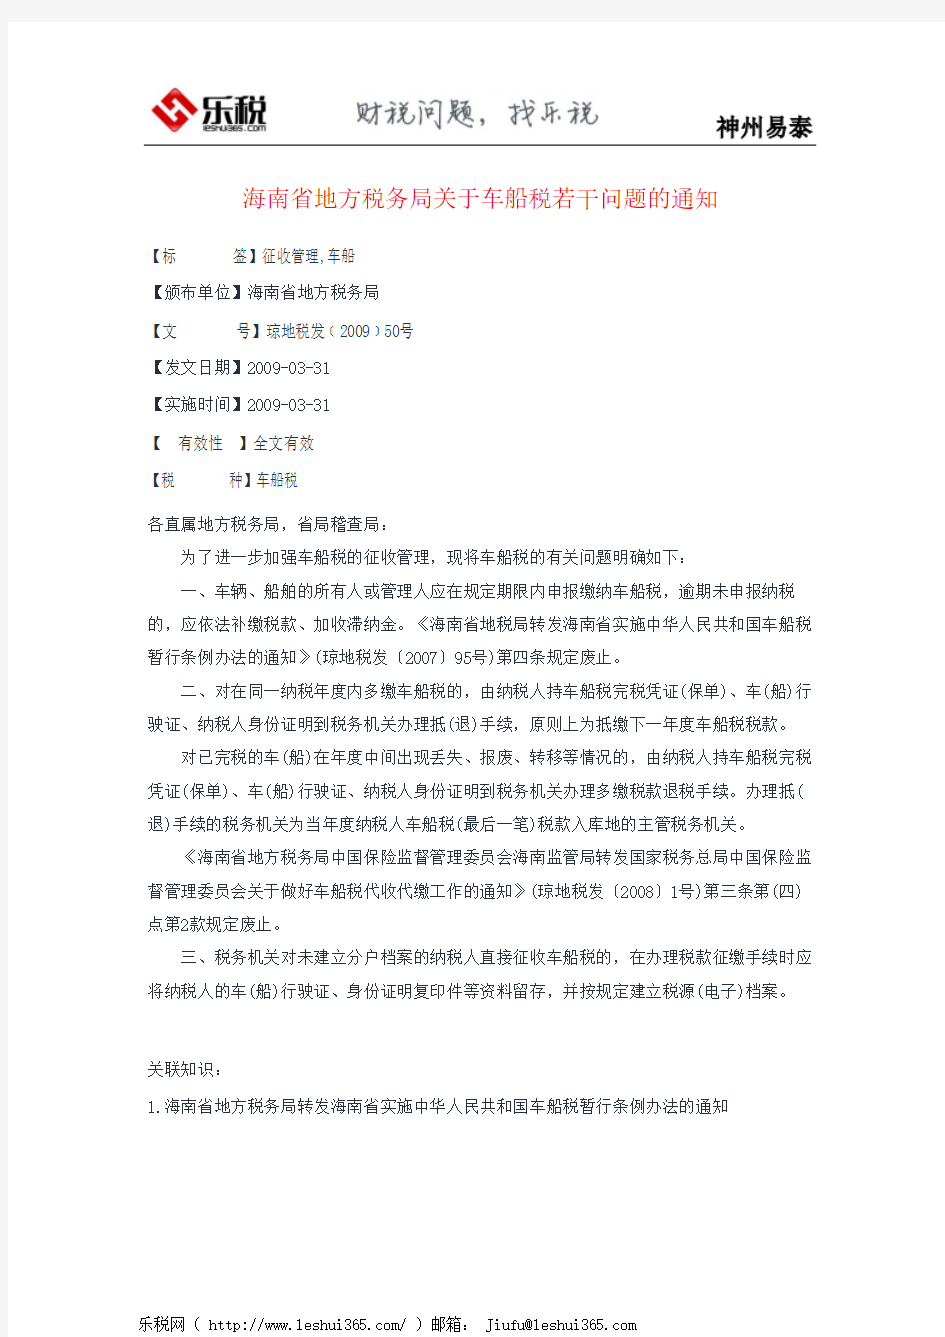 海南省地方税务局关于车船税若干问题的通知